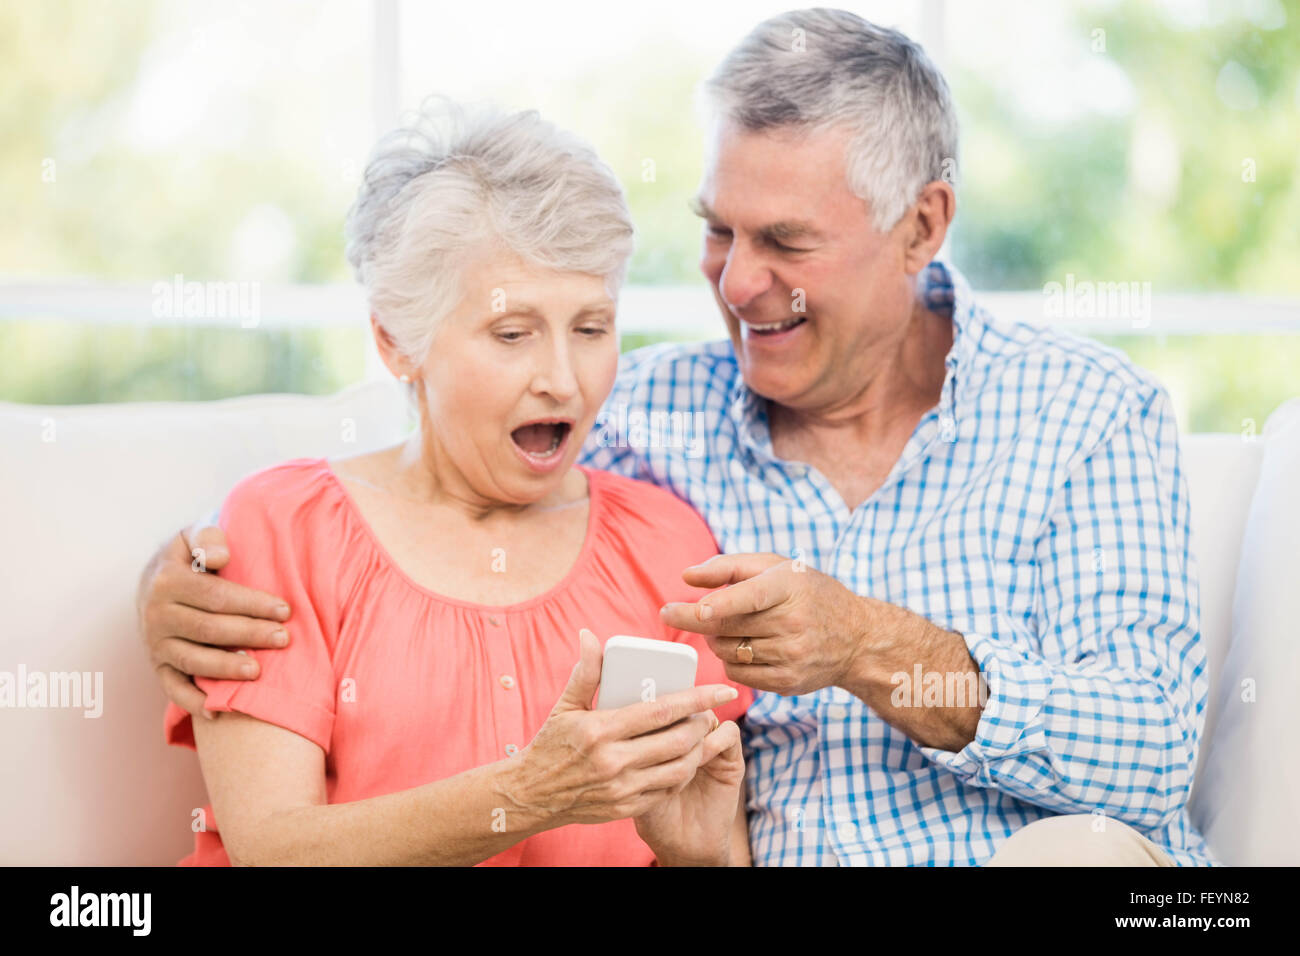 Lächelnde älteres Paar mit smartphone Stockfoto